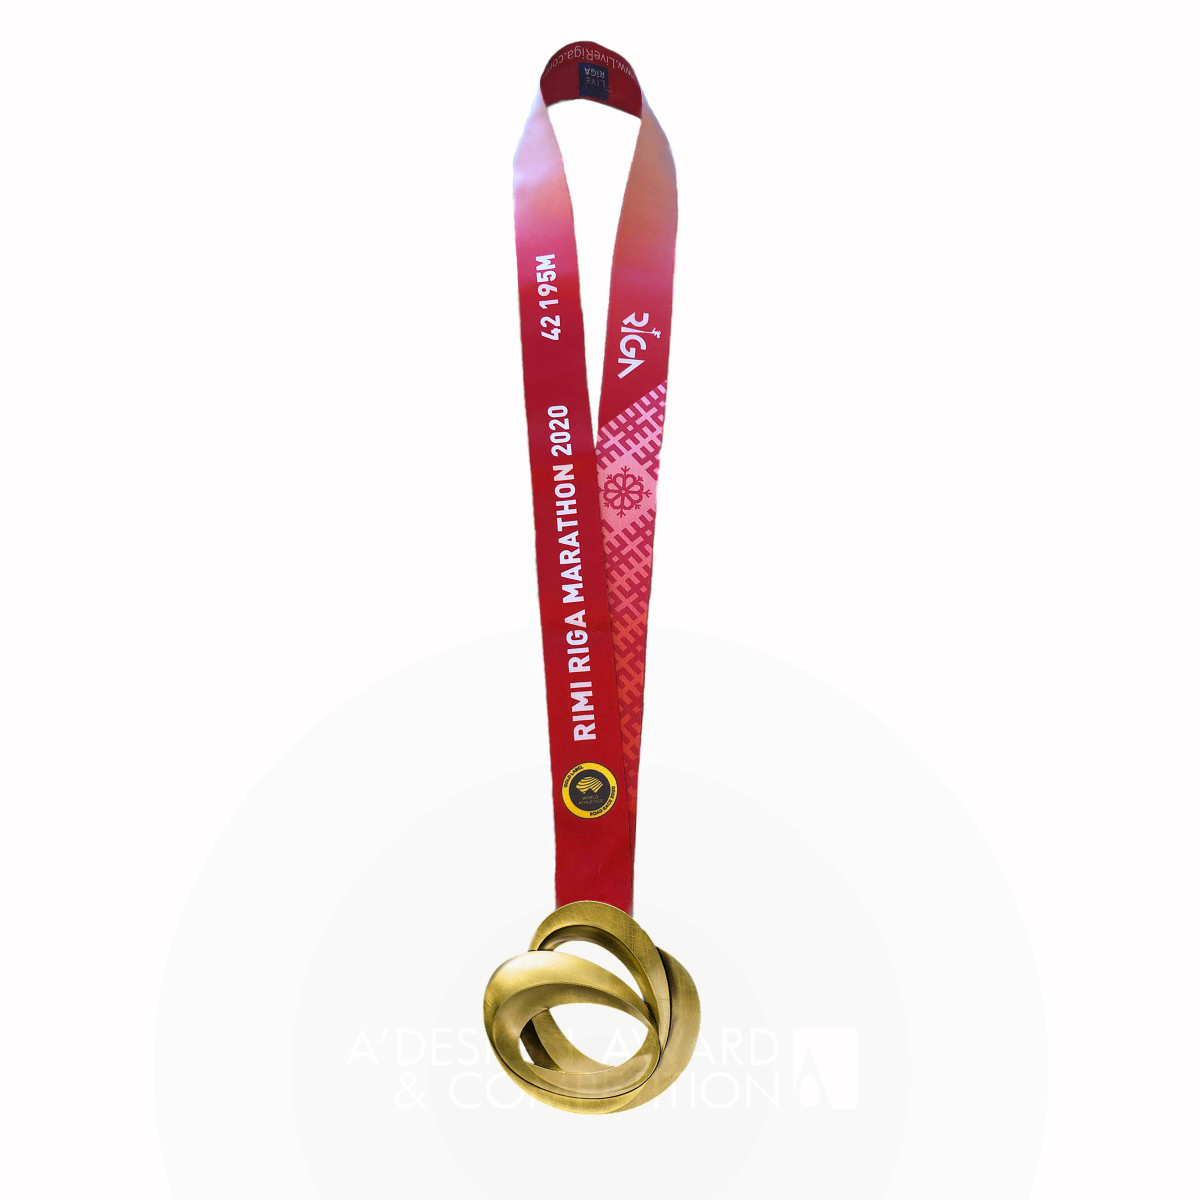 Rimi Riga Marathon 2020 Runner's Medals